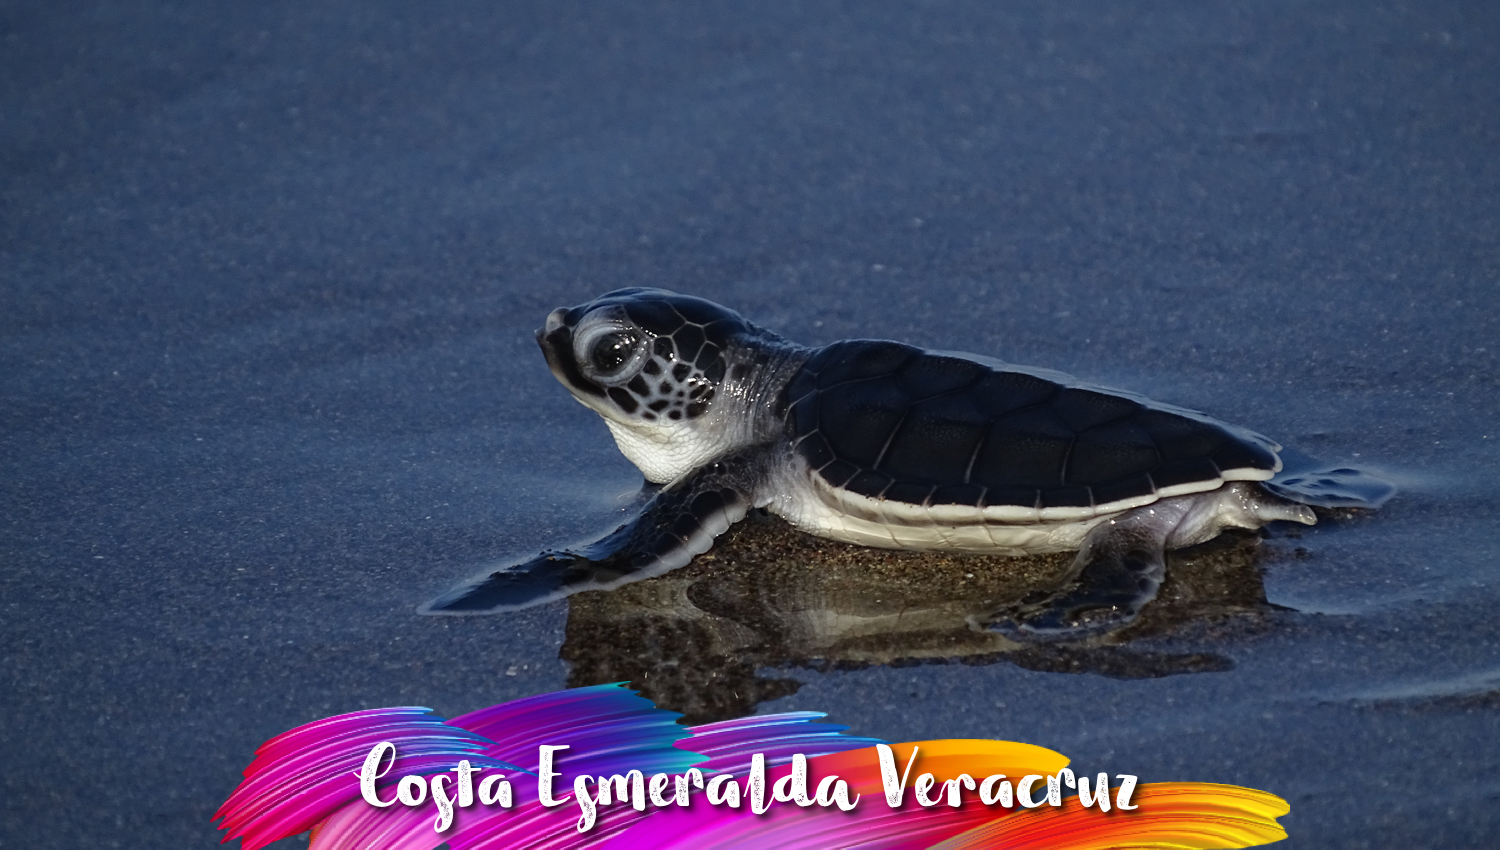 Costa Esmeralda Veracruz